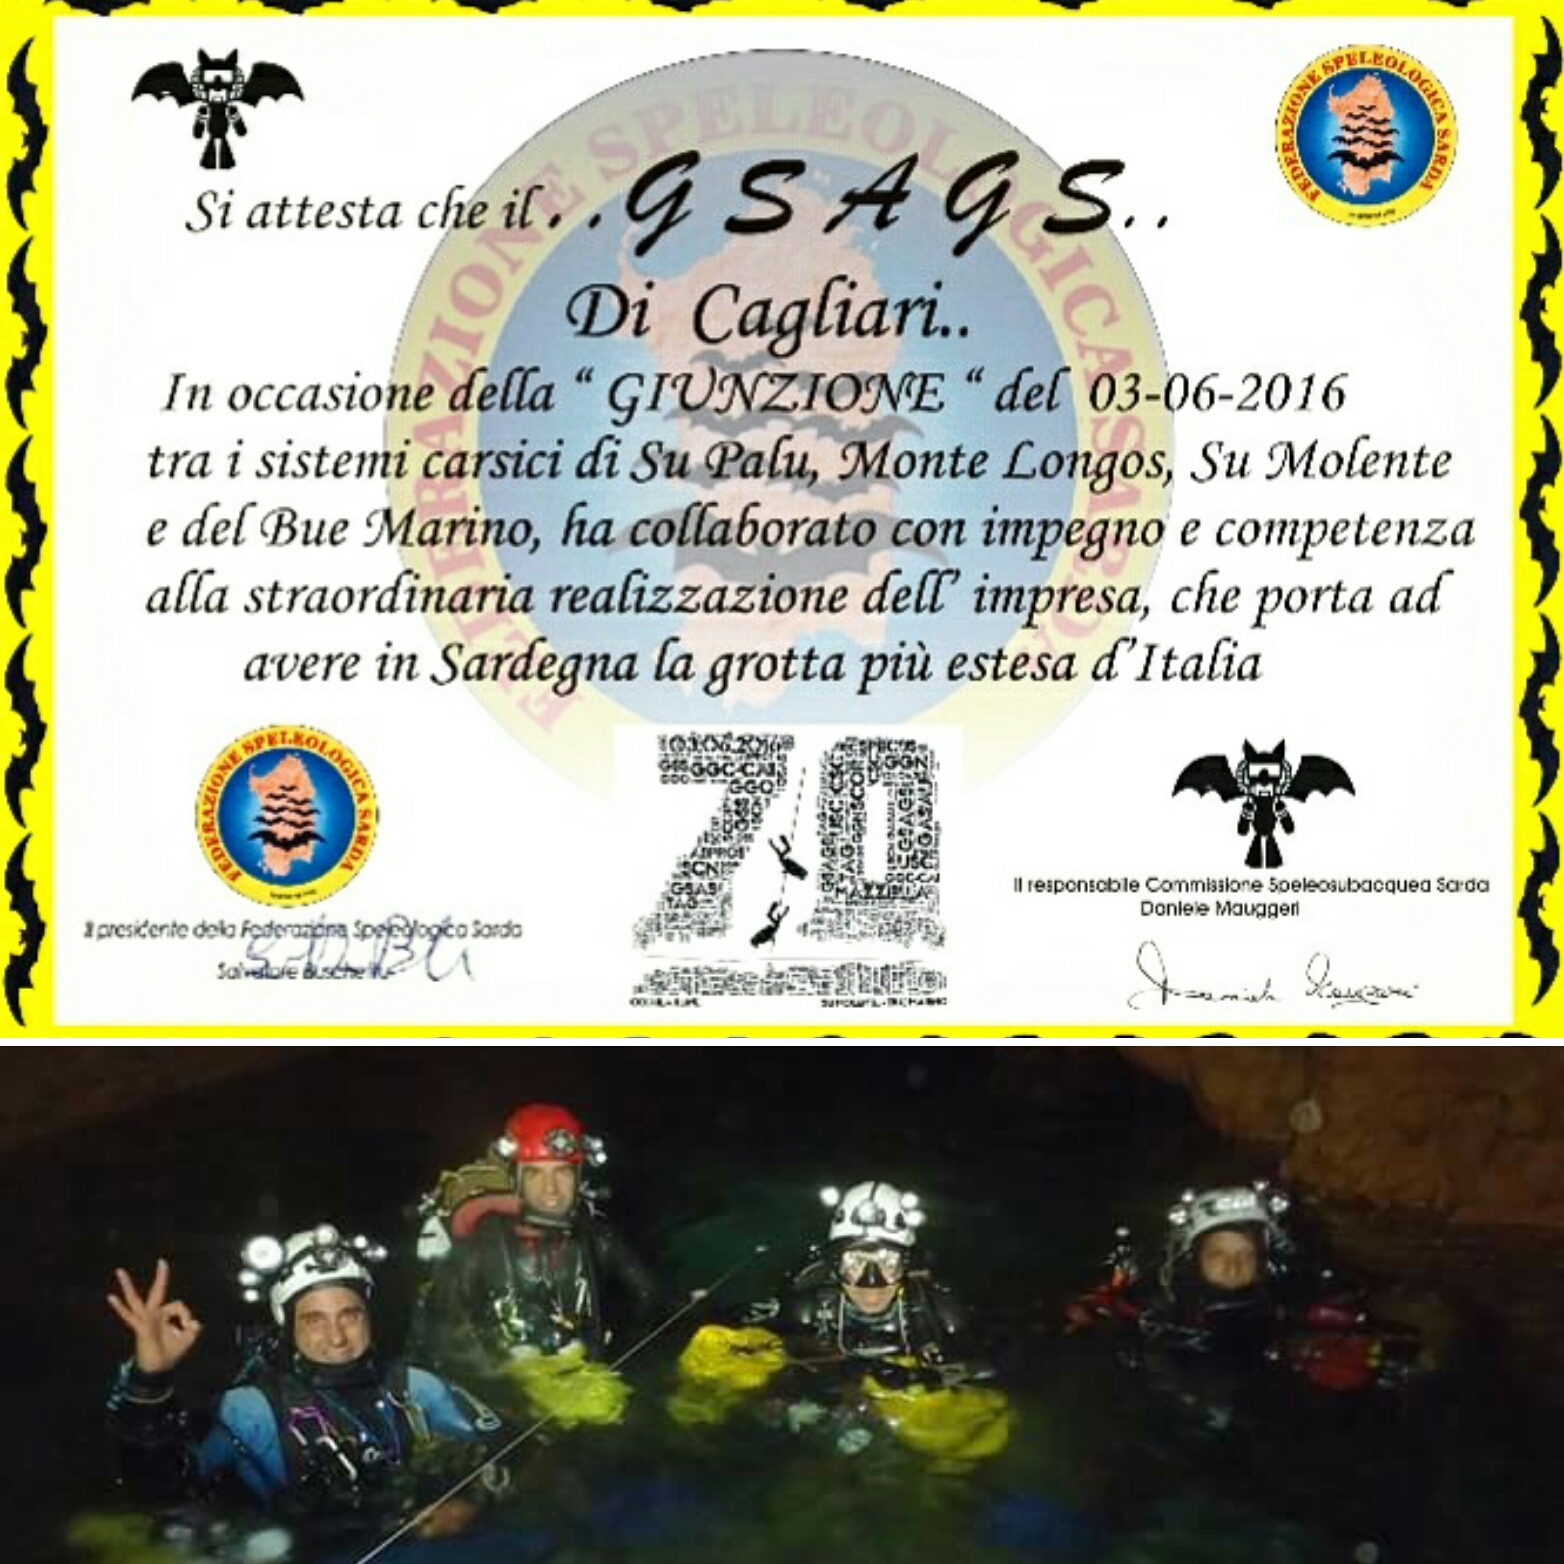 In Sardegna la grotta più lunga: 70 chilometri è record italiano